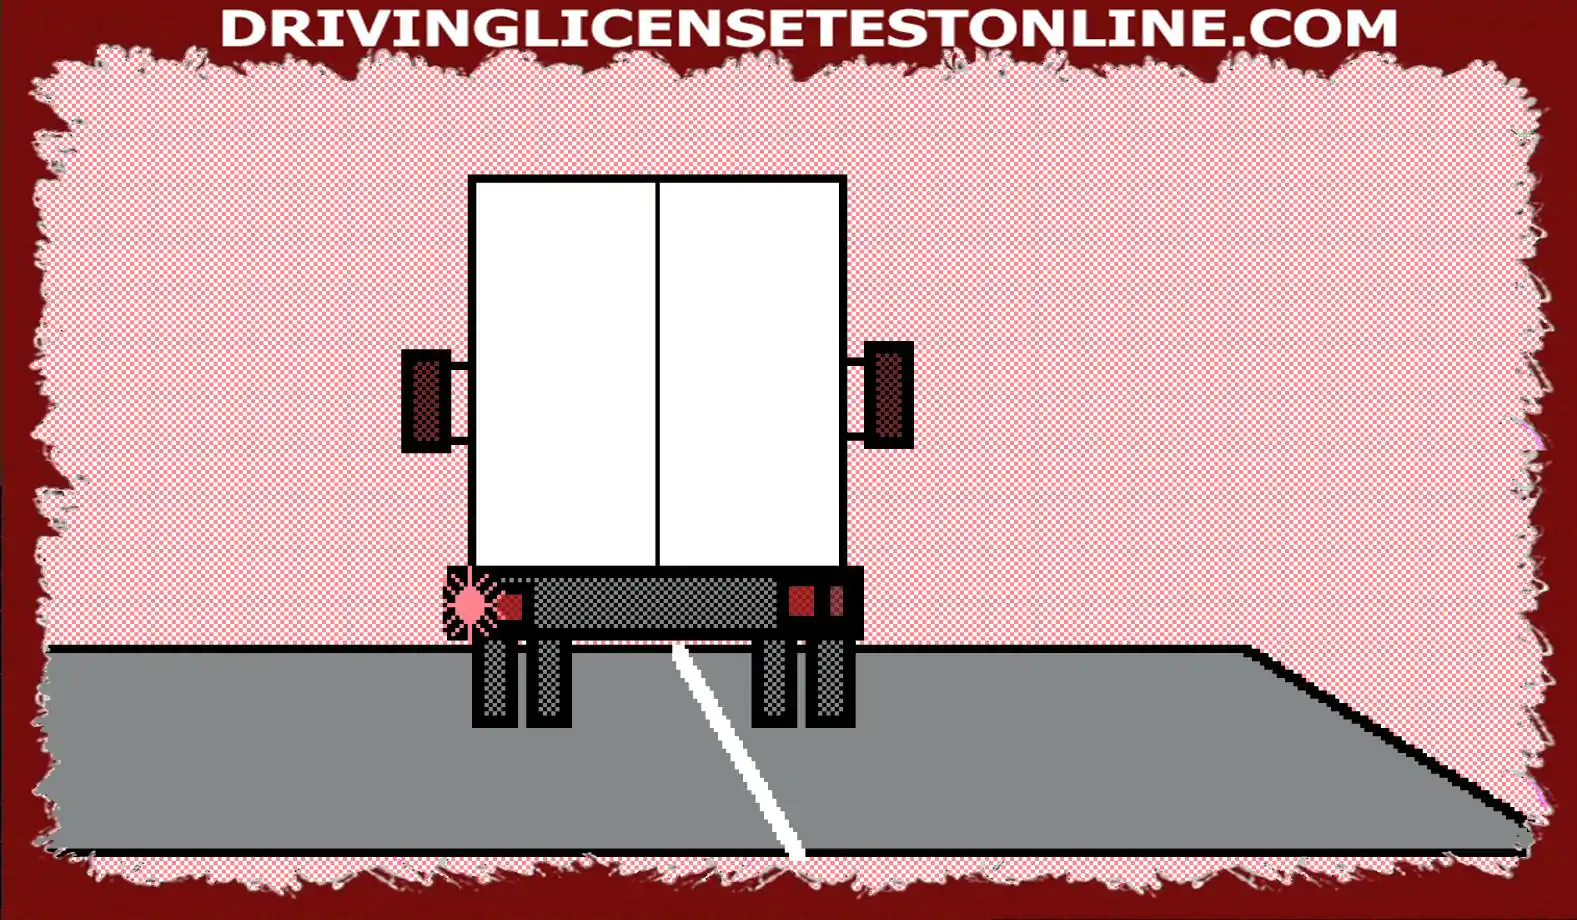 Bạn đang theo sau một chiếc xe dài . Khi nó đến gần ngã tư, nó báo hiệu bên trái nhưng di chuyển sang bên phải . Bạn nên làm gì ?